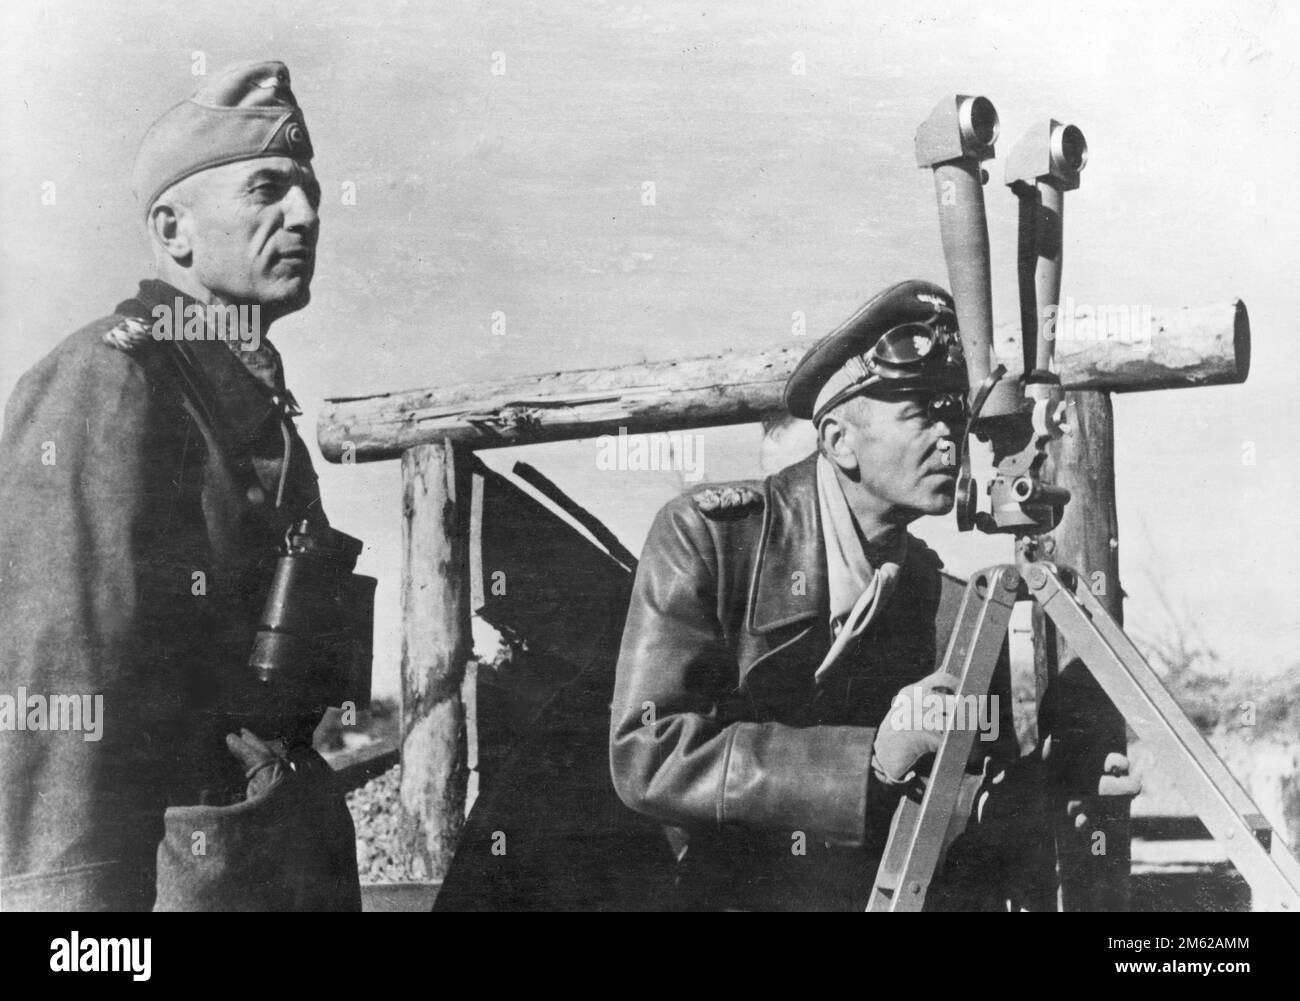 Le général Friedrich Paulus observe la situation à l'avant à travers les jumelles Scherenfernrohr SF09 ciseaux. À côté de lui se trouve le général Hermann Hoth. Paulus était le général qui avait le commandement global de l'armée de 6th qui a été entièrement perdue à Stalingrad. Hoth était un chef de l'Armée Panzer Banque D'Images